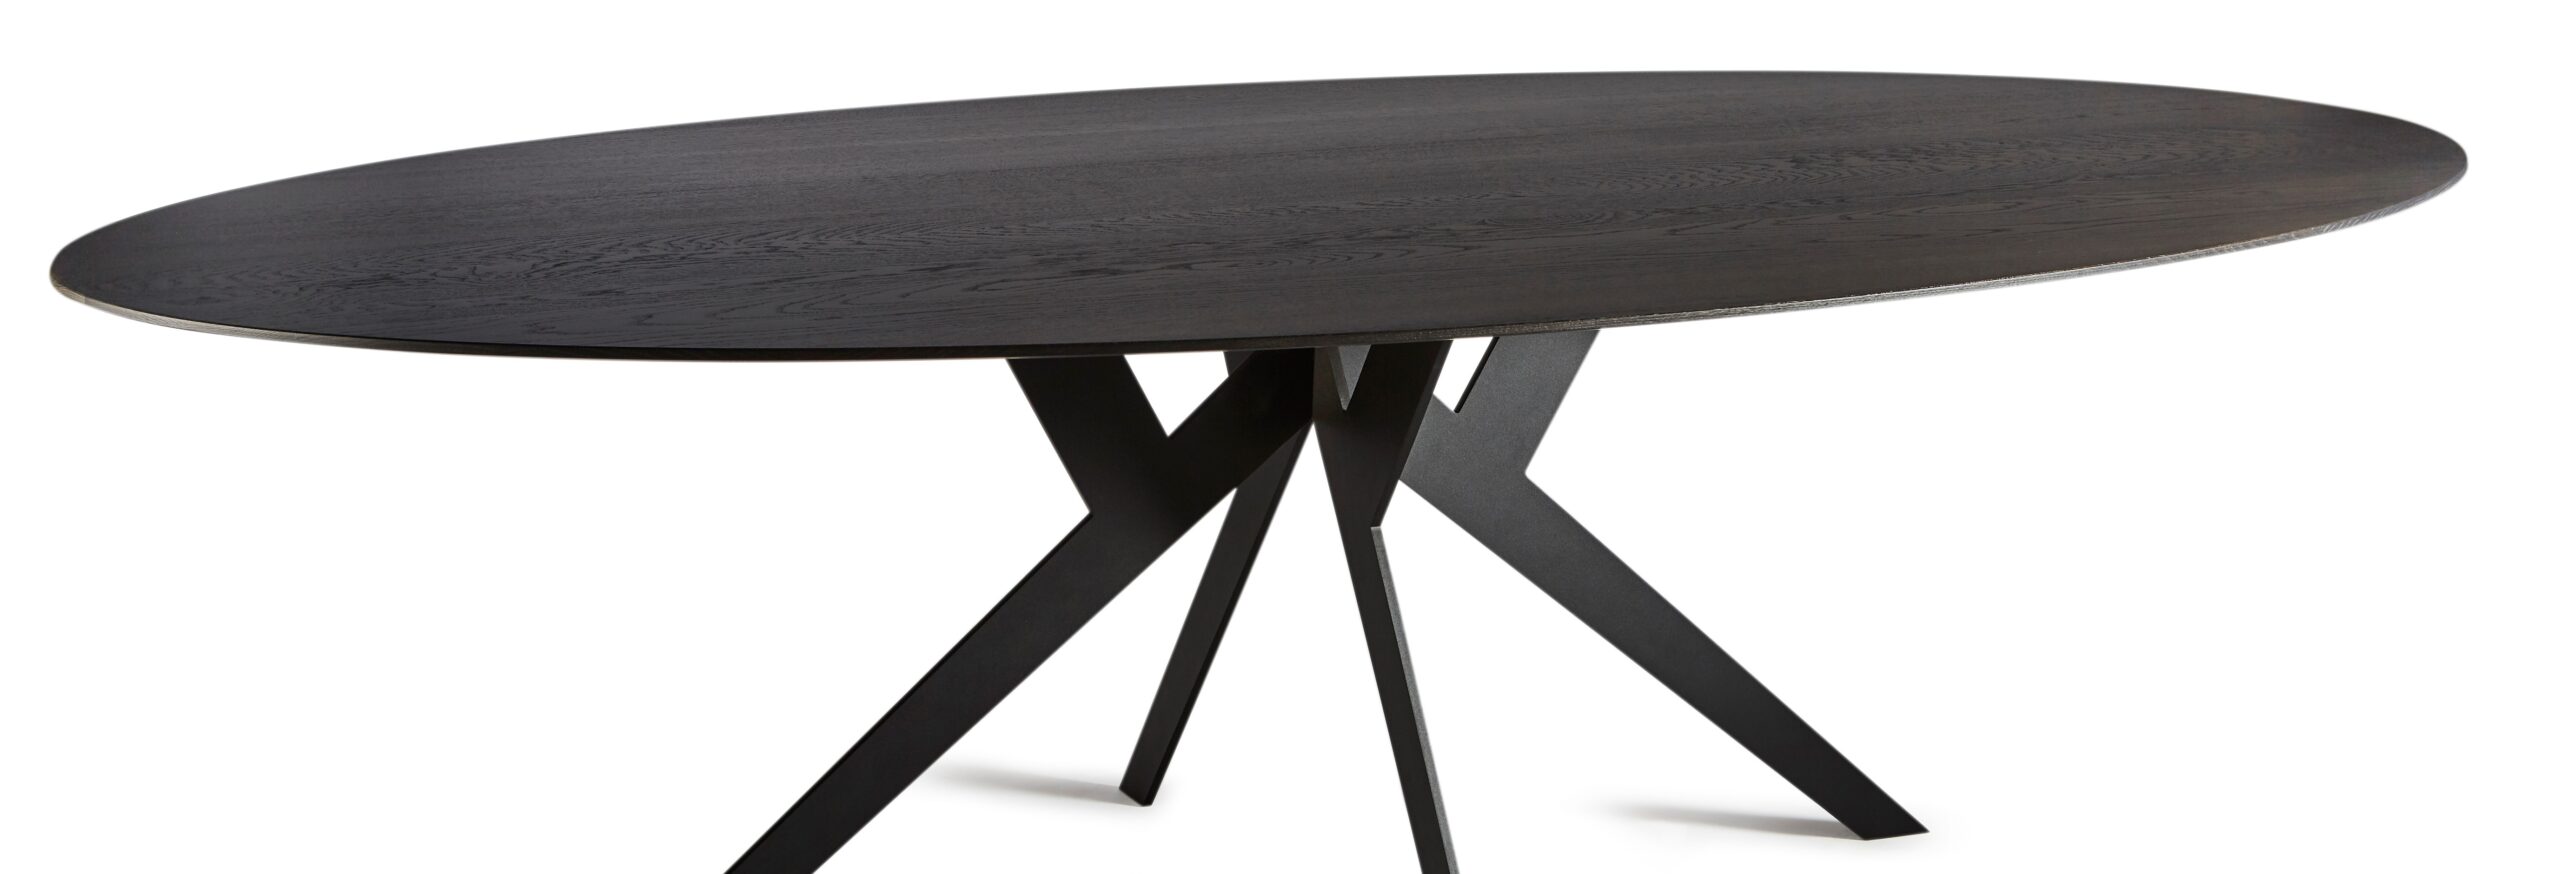 Evolution-Design tafels-Design meubels-Meubelzaak-Designwinkel-Interieurwinkel